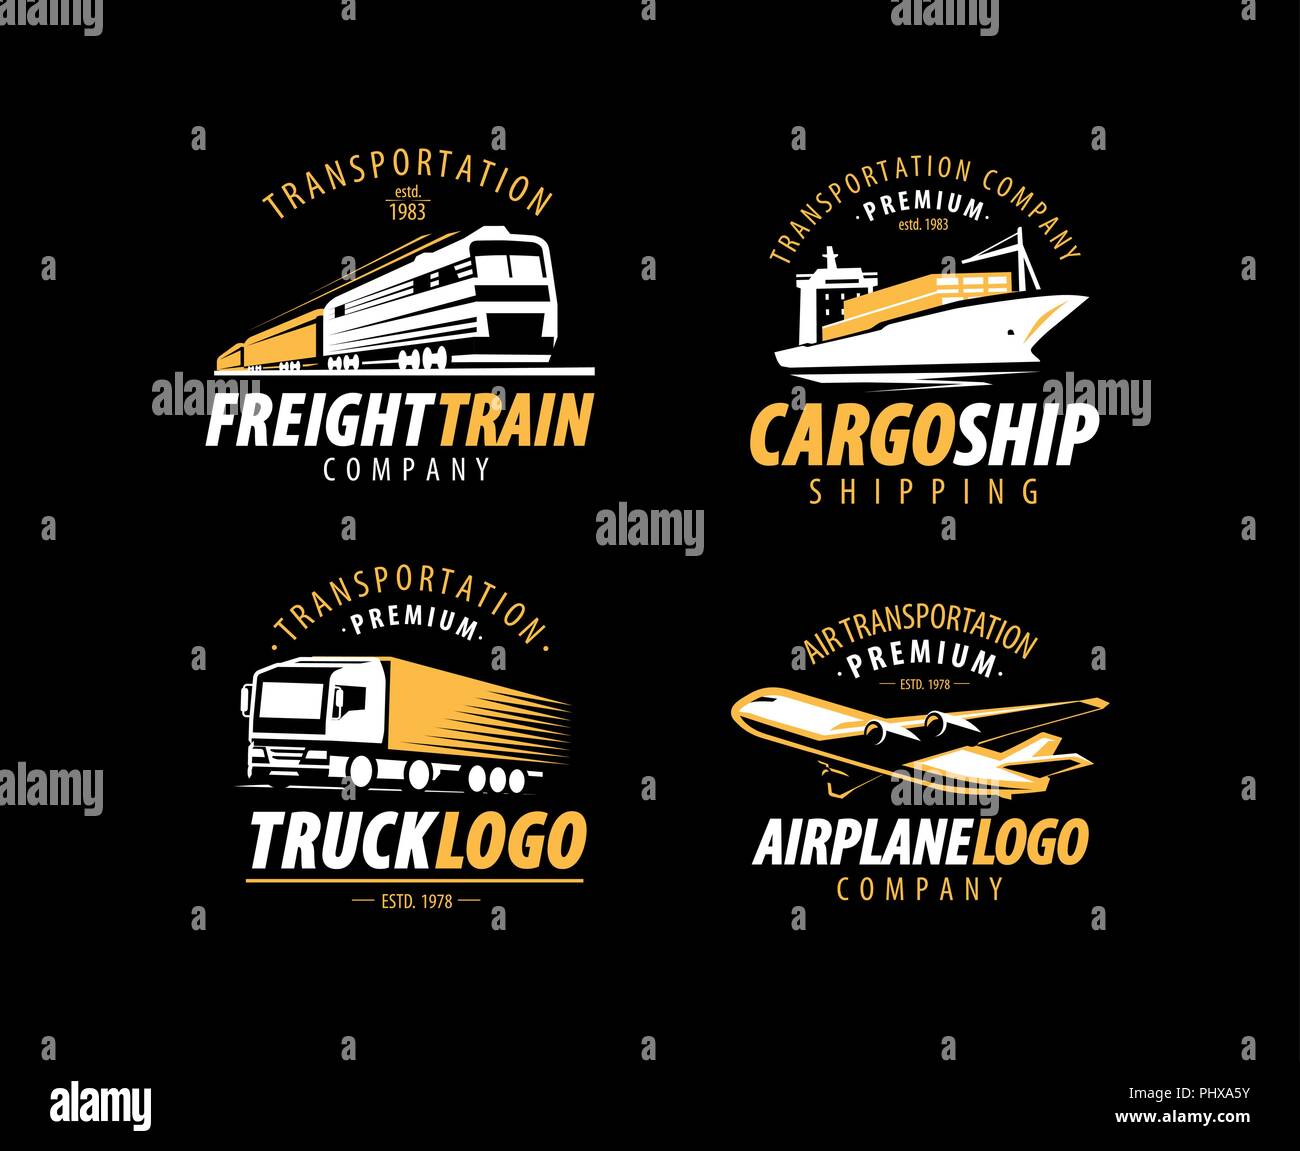 Transporte, envío logo. El transporte de carga, etiqueta de entrega. Ilustración vectorial Ilustración del Vector